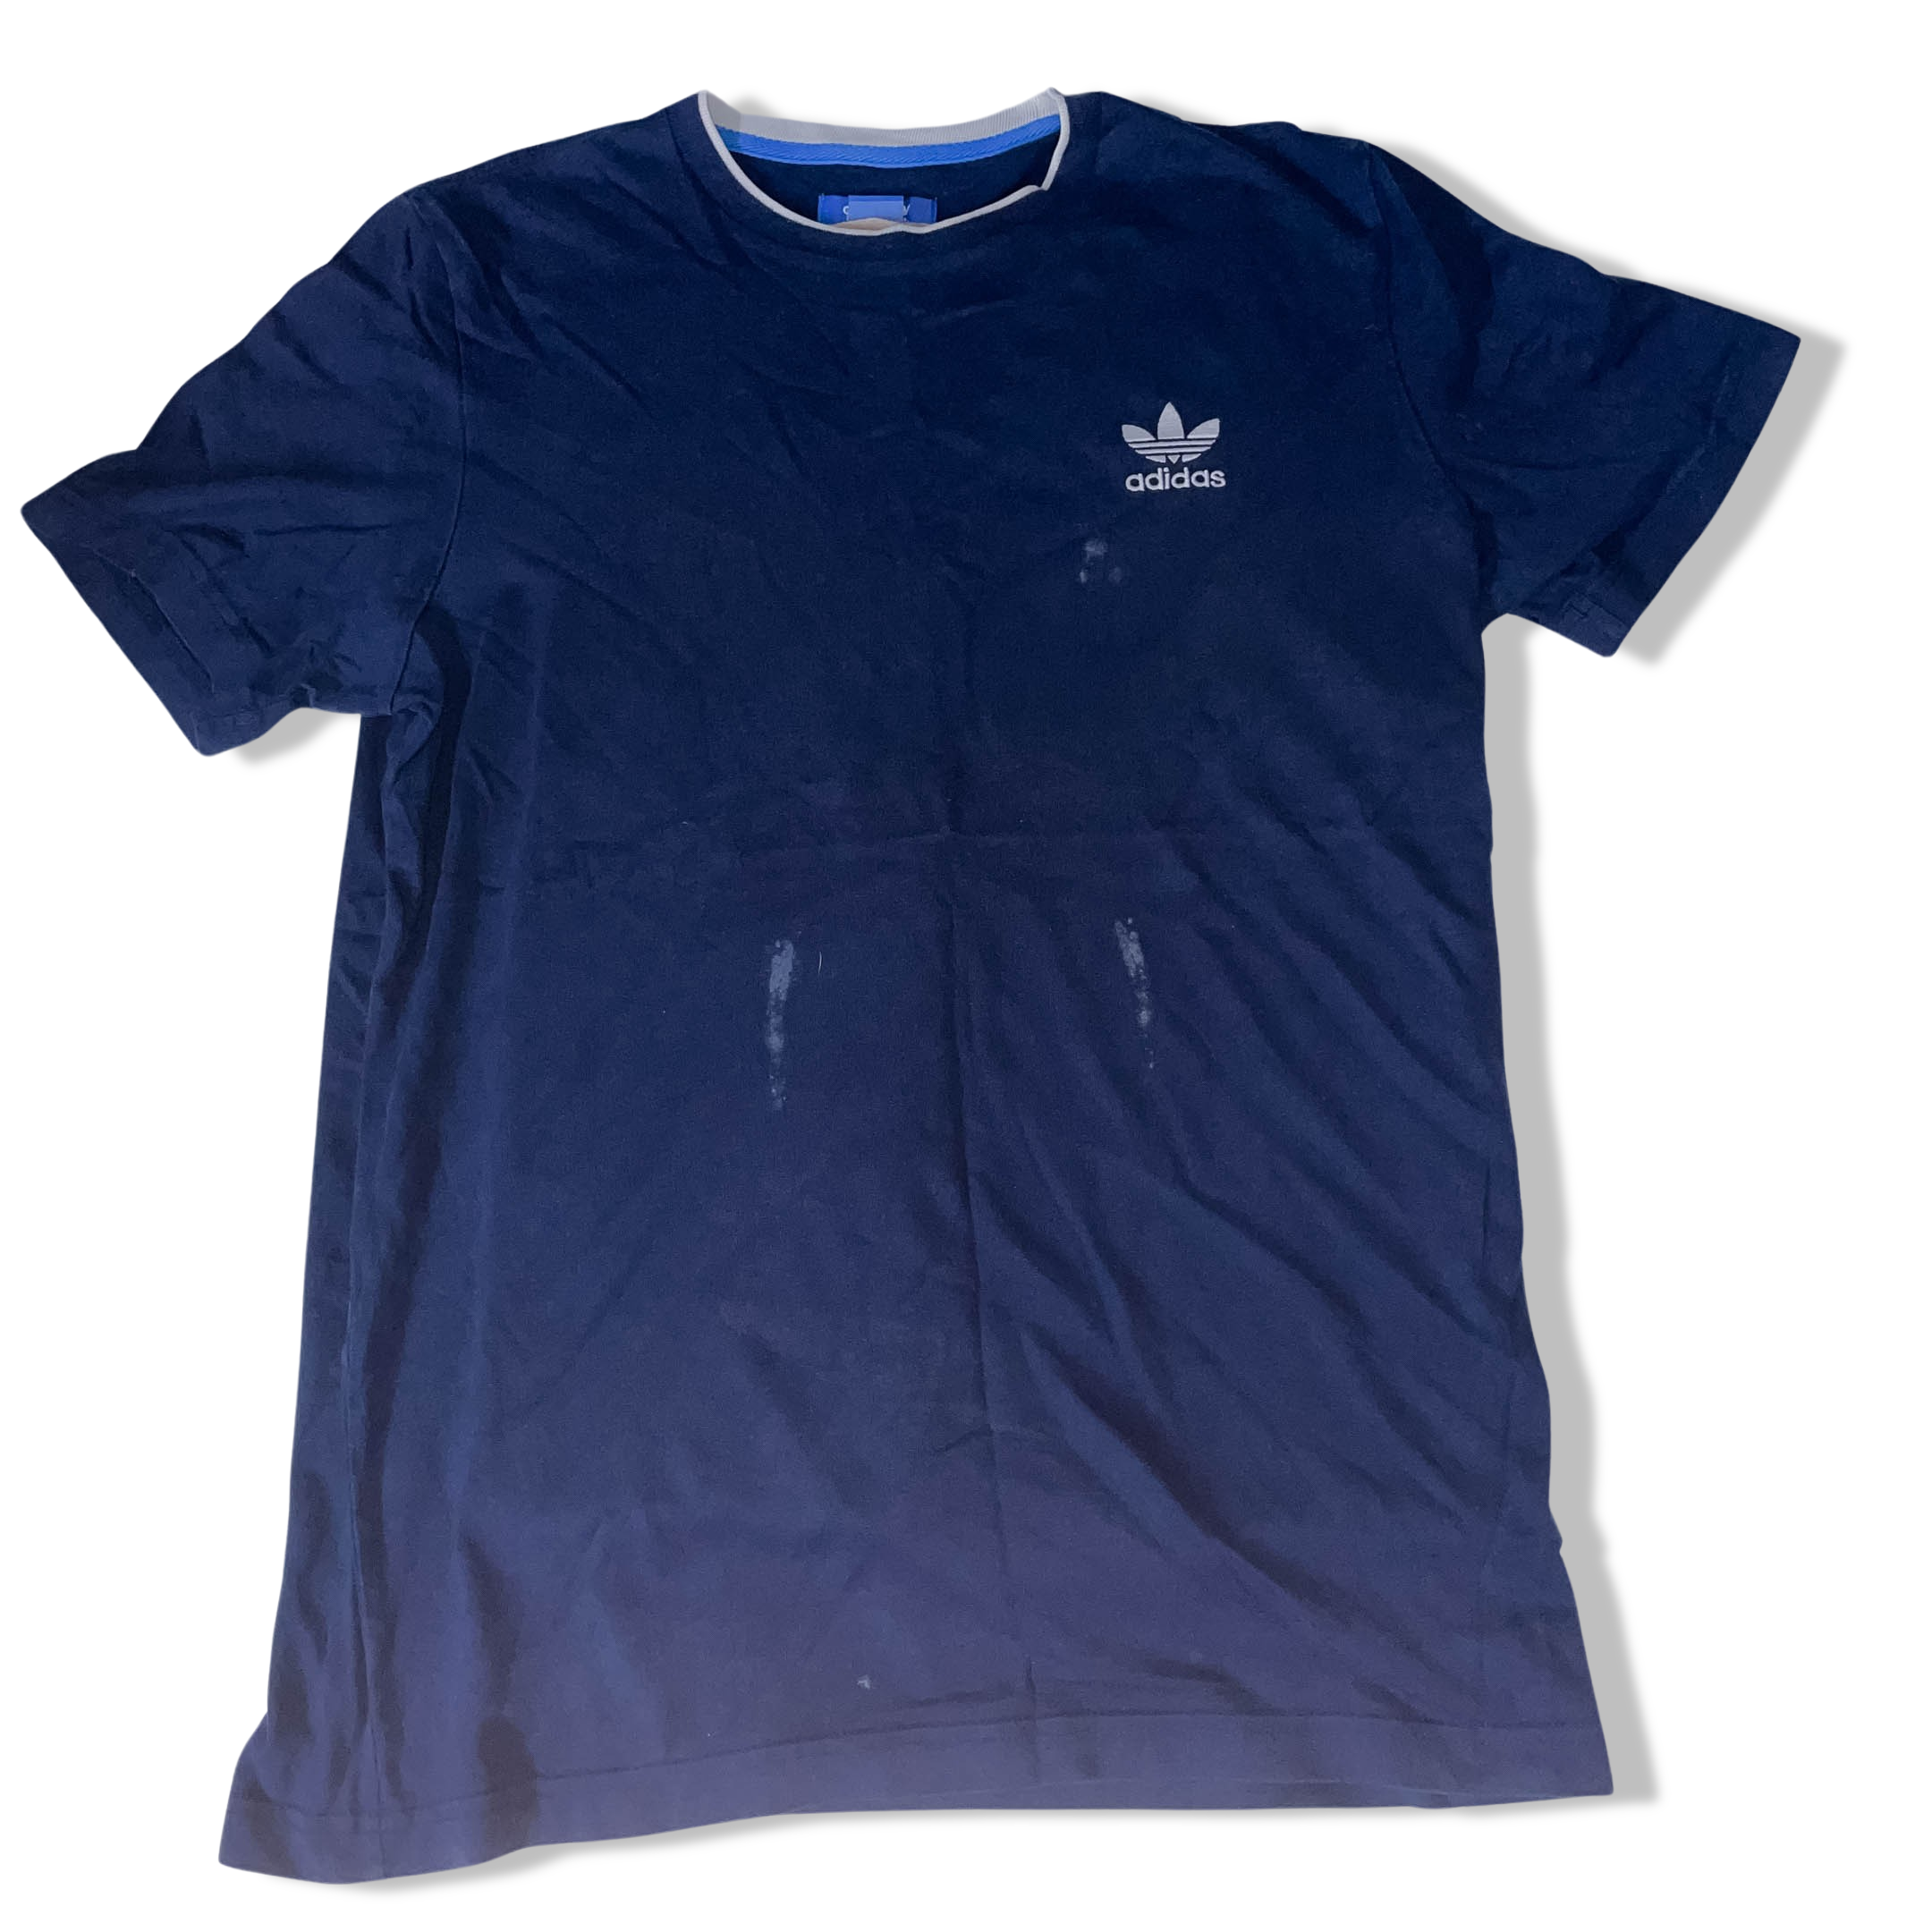 Vintage Tshirt Navy Adidas original medium mens short sleeve